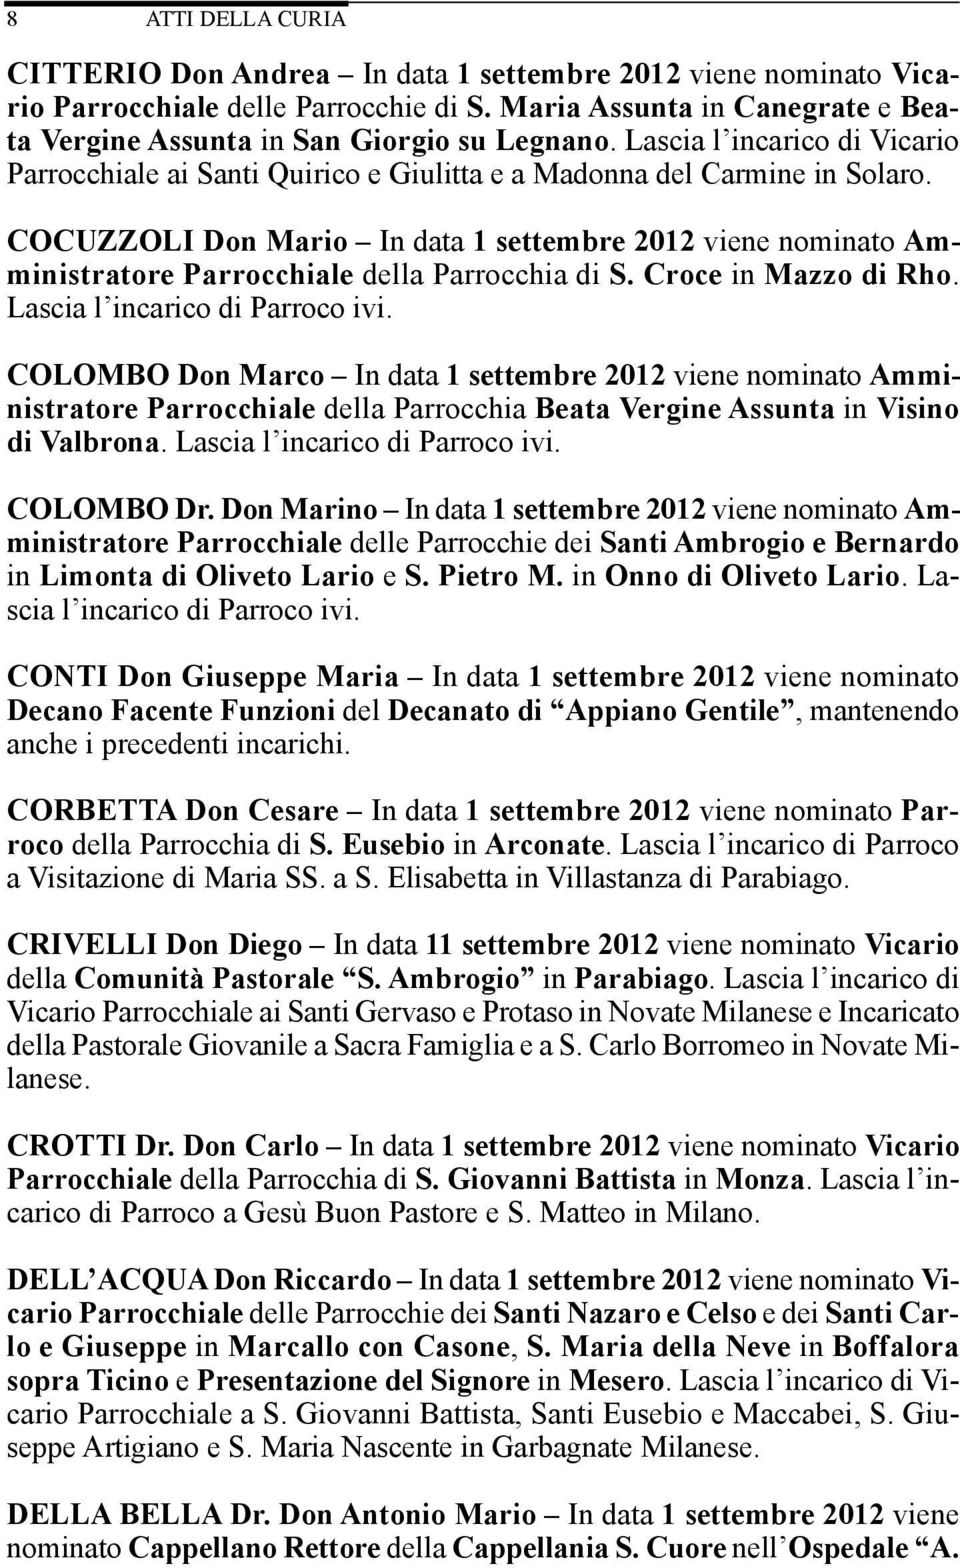 COCUZZOLI Don Mario In data 1 settembre 2012 viene nominato Amministratore Parrocchiale della Parrocchia di S. Croce in Mazzo di Rho. Lascia l incarico di Parroco ivi.